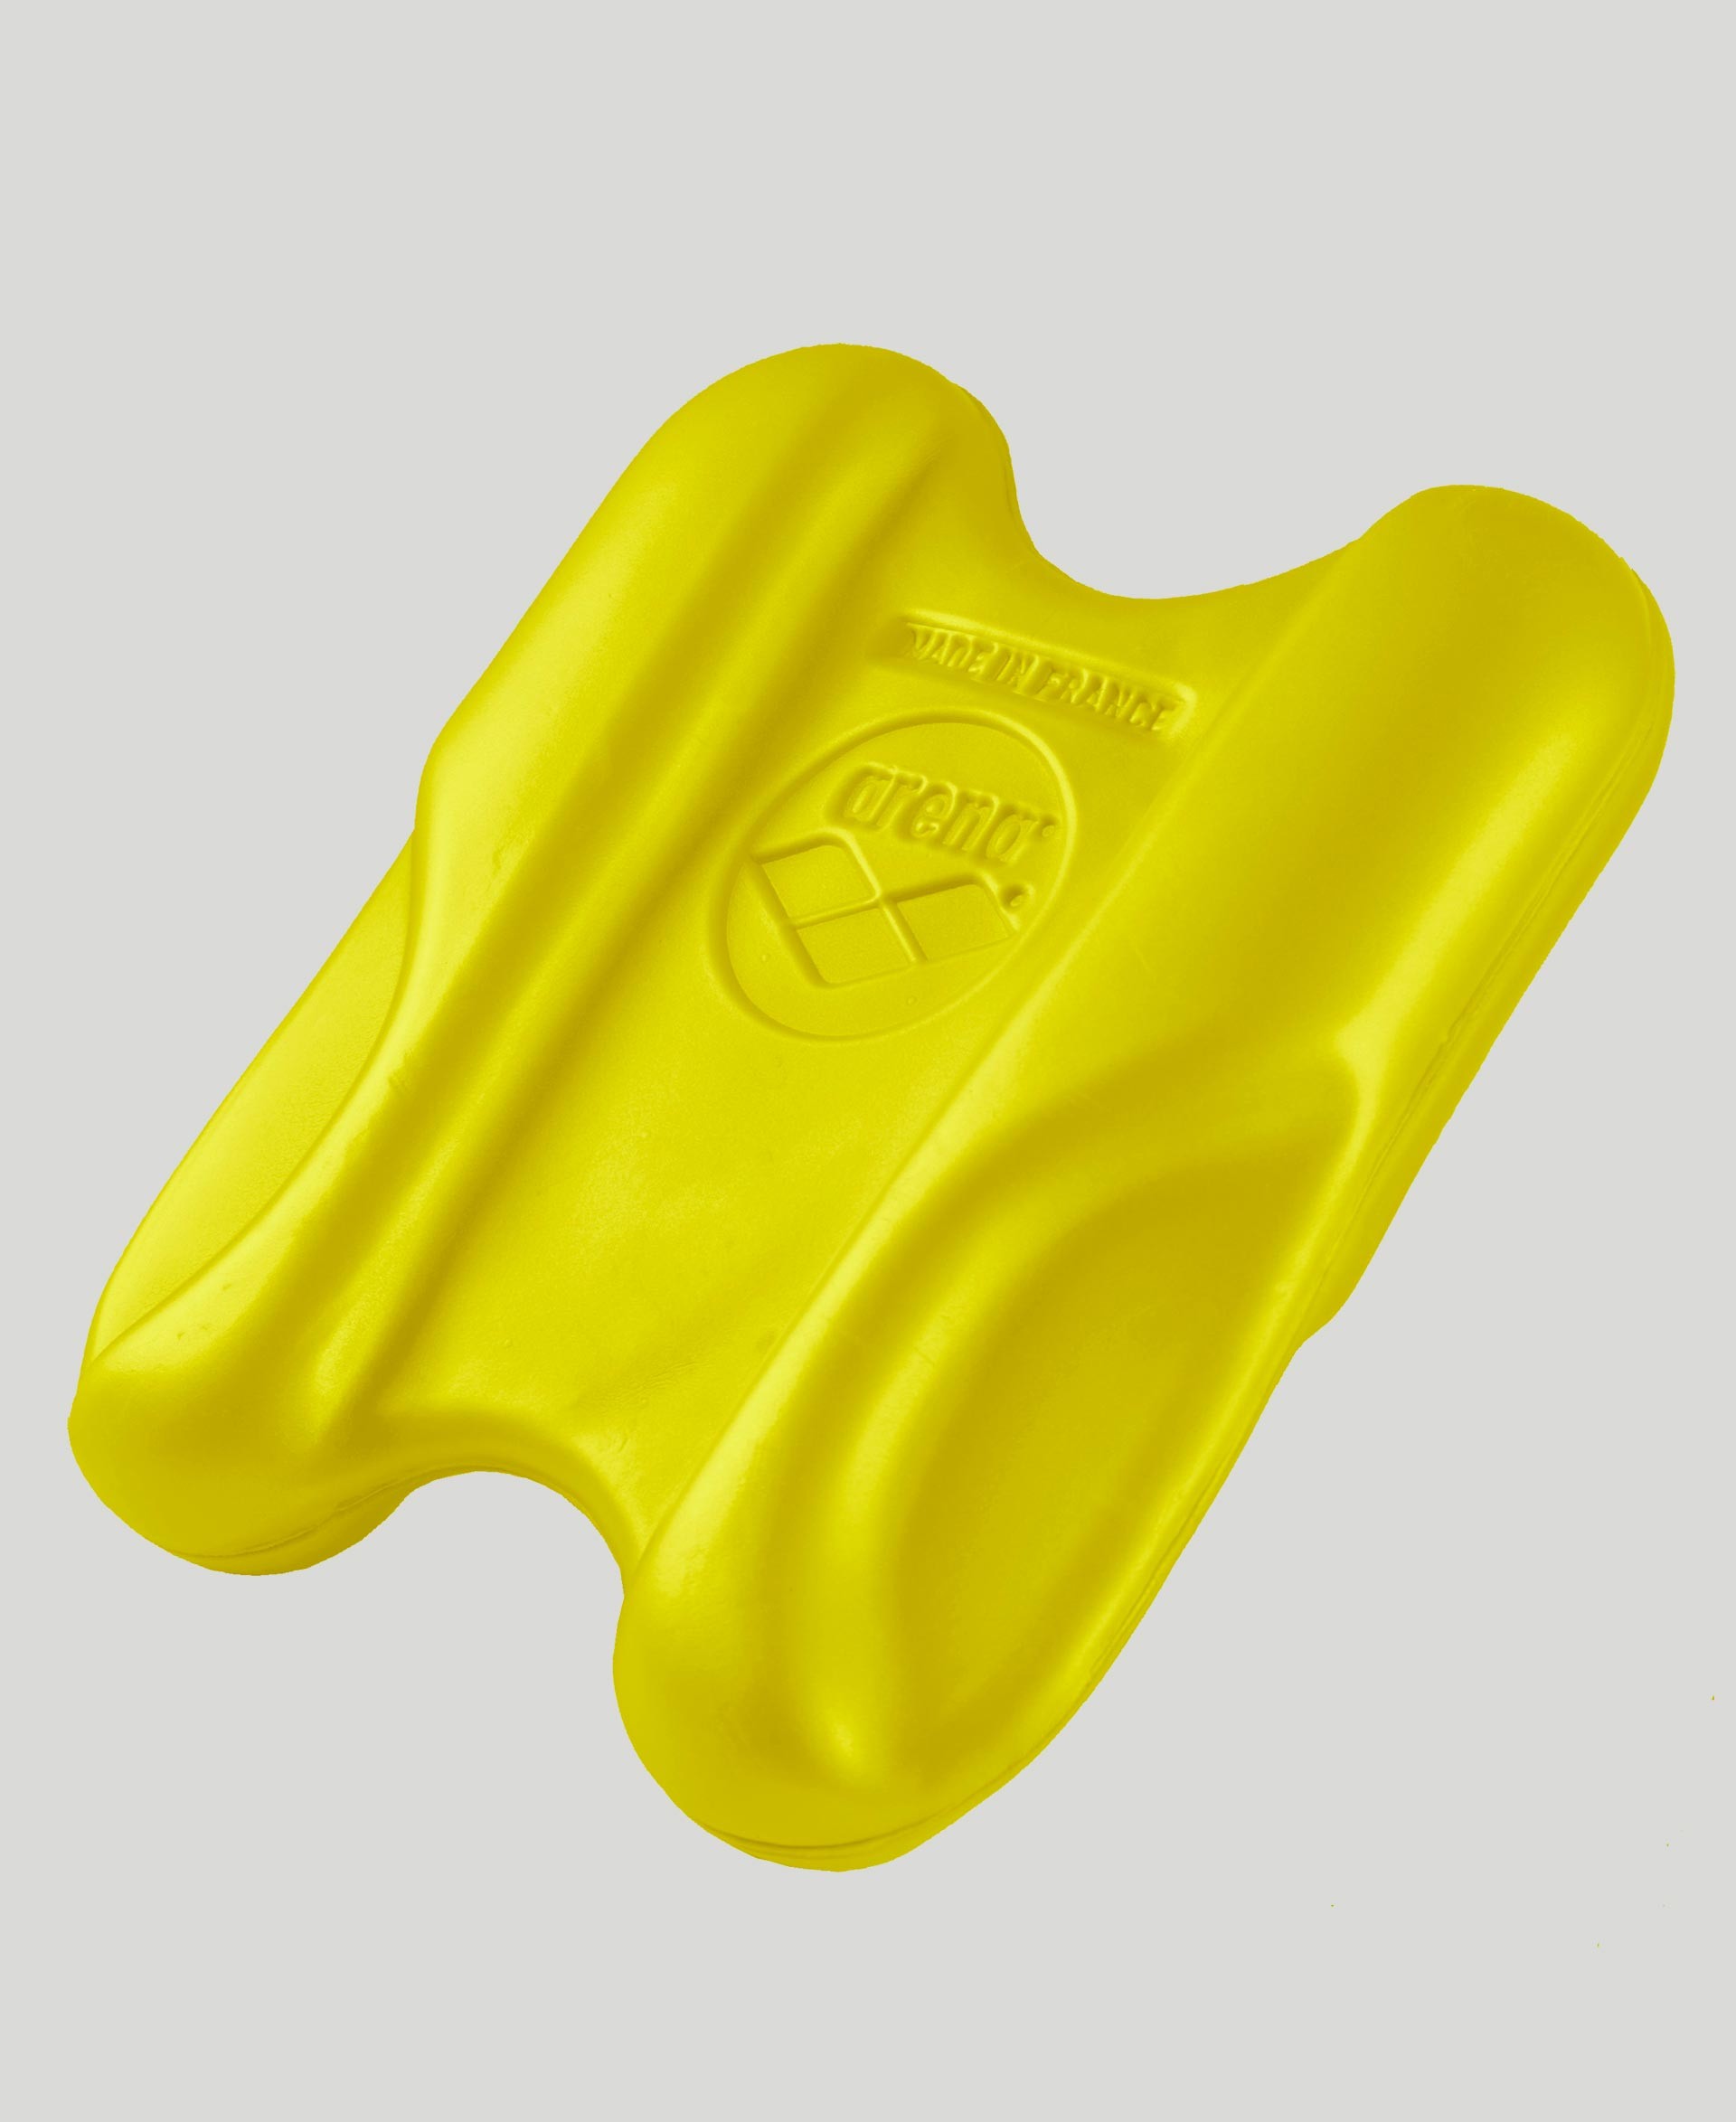 Swimxwin Pullkick Pull Buoys y tableta para natación profesional